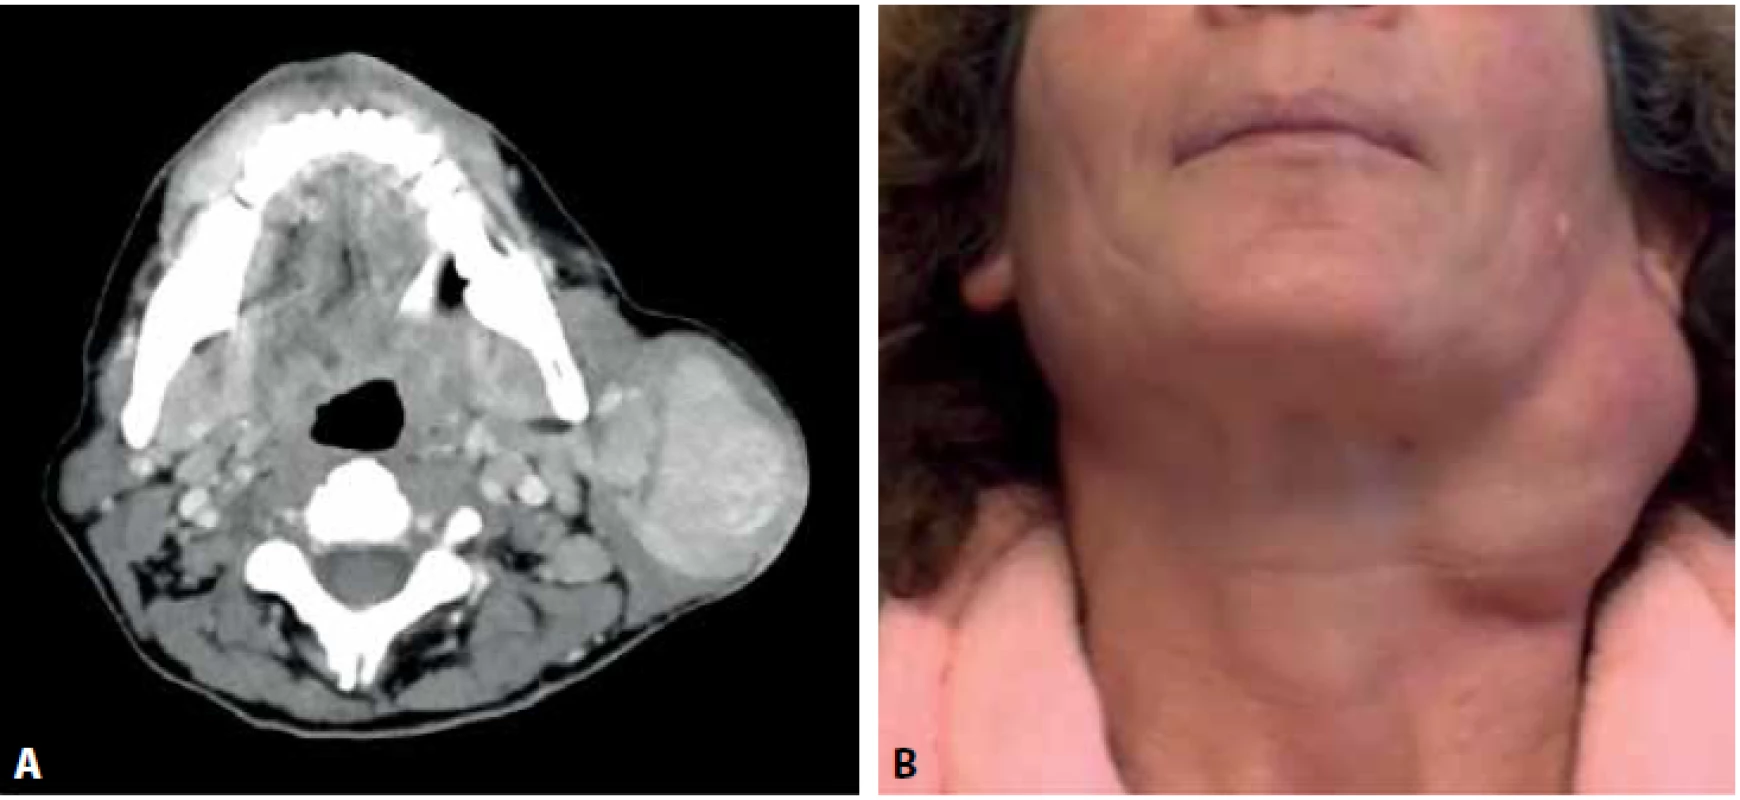 A: CT vyšetření s nálezem hypotenzního ostře ohraničeného multinodulárního útvaru v povrchovém listu levé příušní žlázy se stejnostrannou lymfadenopatií. B: fotografie nemocné se zjevným multinodulárním tumorem příušní žlázy.